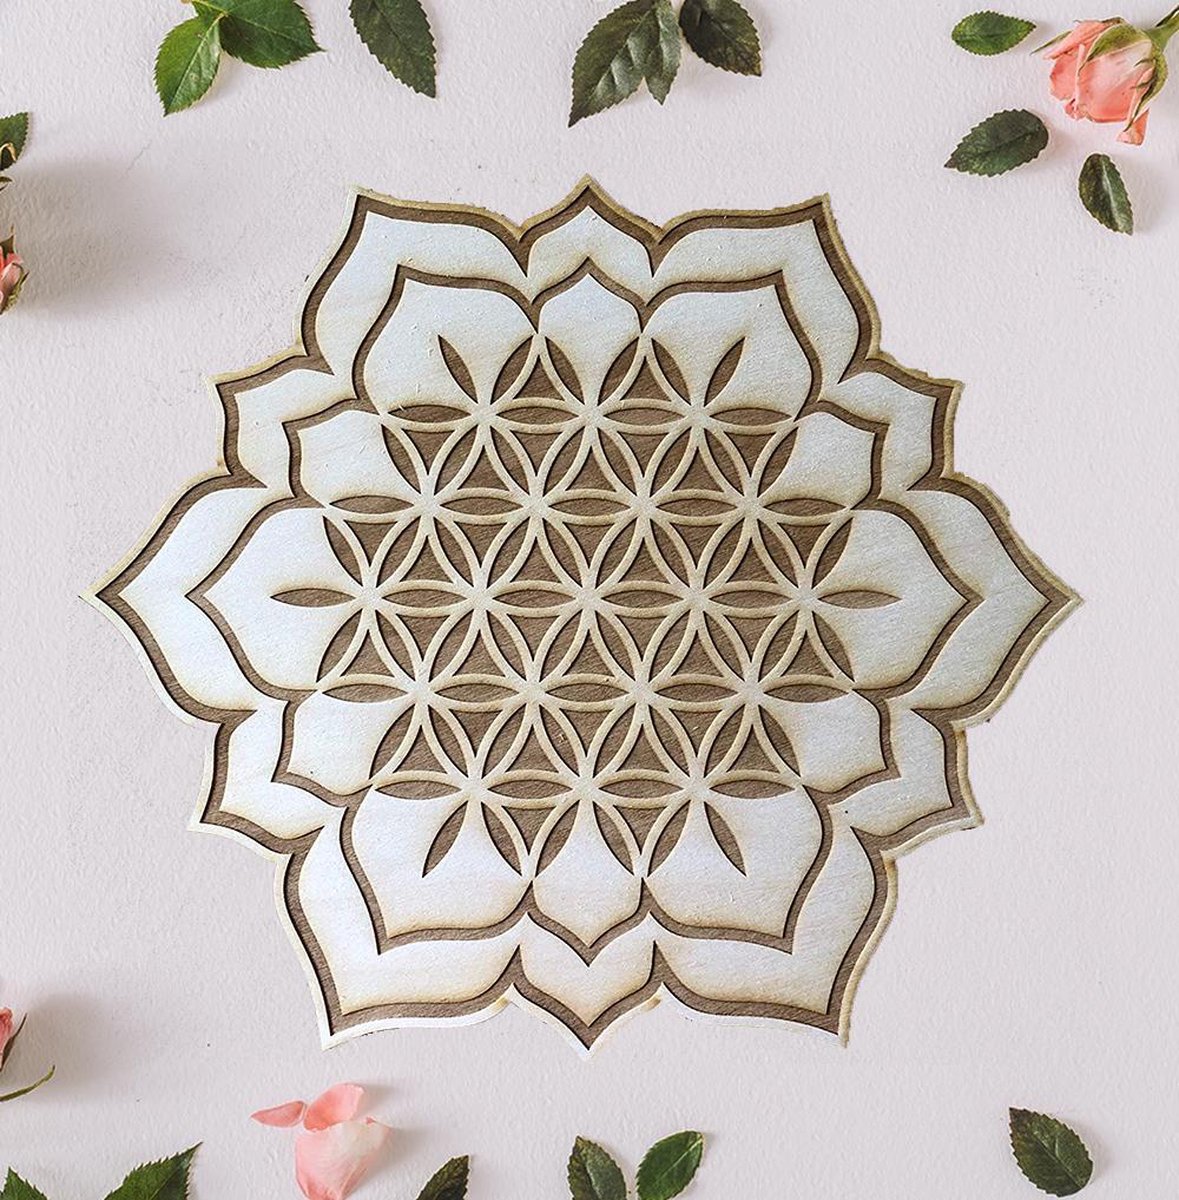 Flower of Life Lotus Crystal Grid